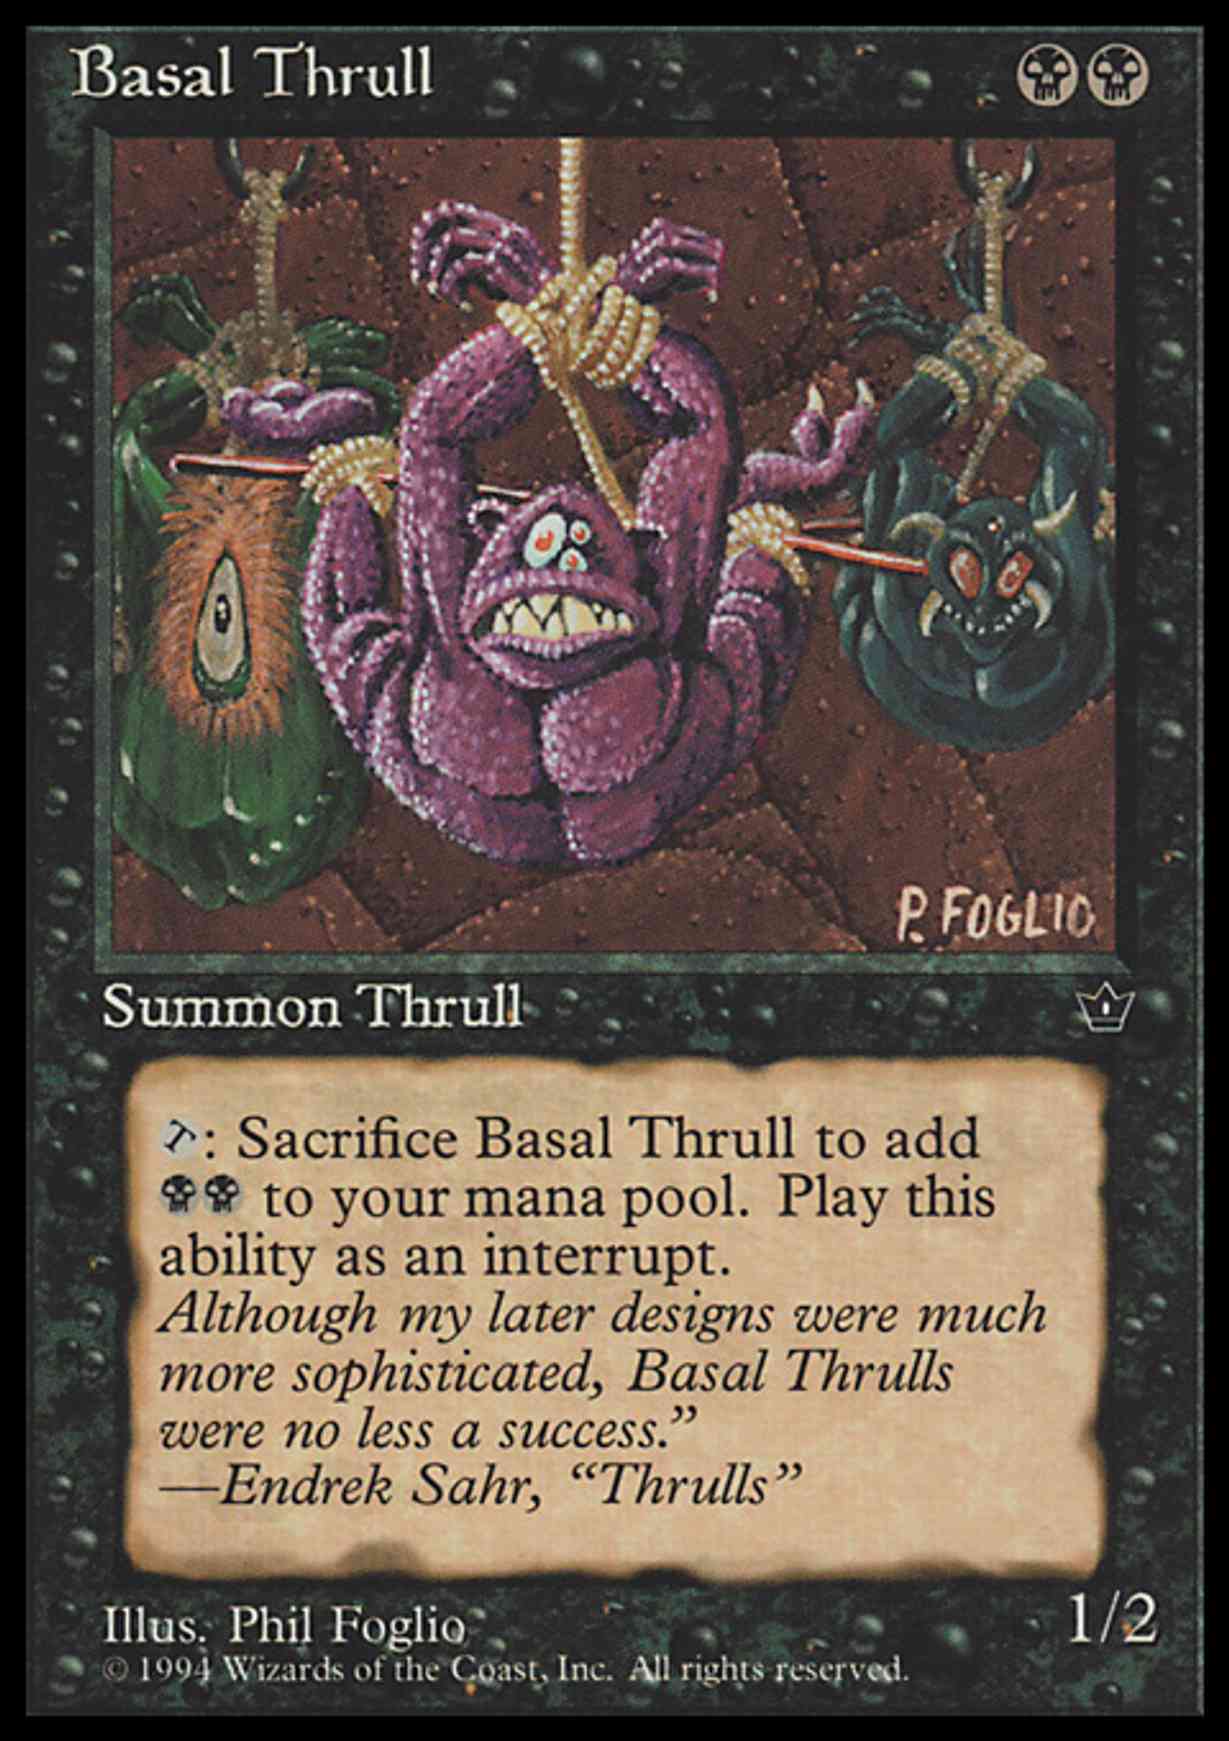 Basal Thrull (P. Foglio) magic card front